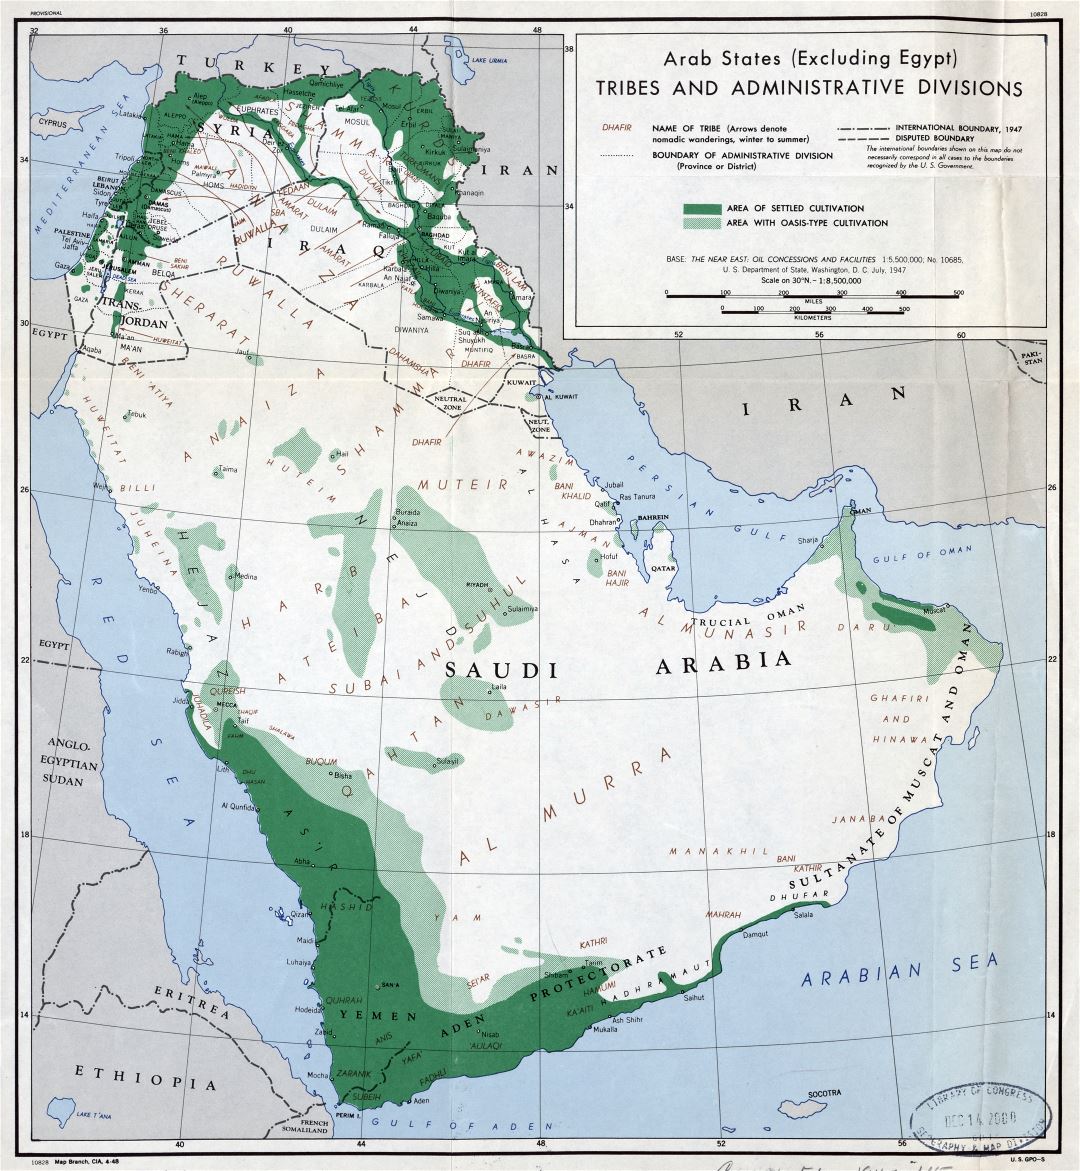 Grande detallado mapa de las tribus y administrativas divisiones de los estados árabes (excluyendo Egipto) - 1947